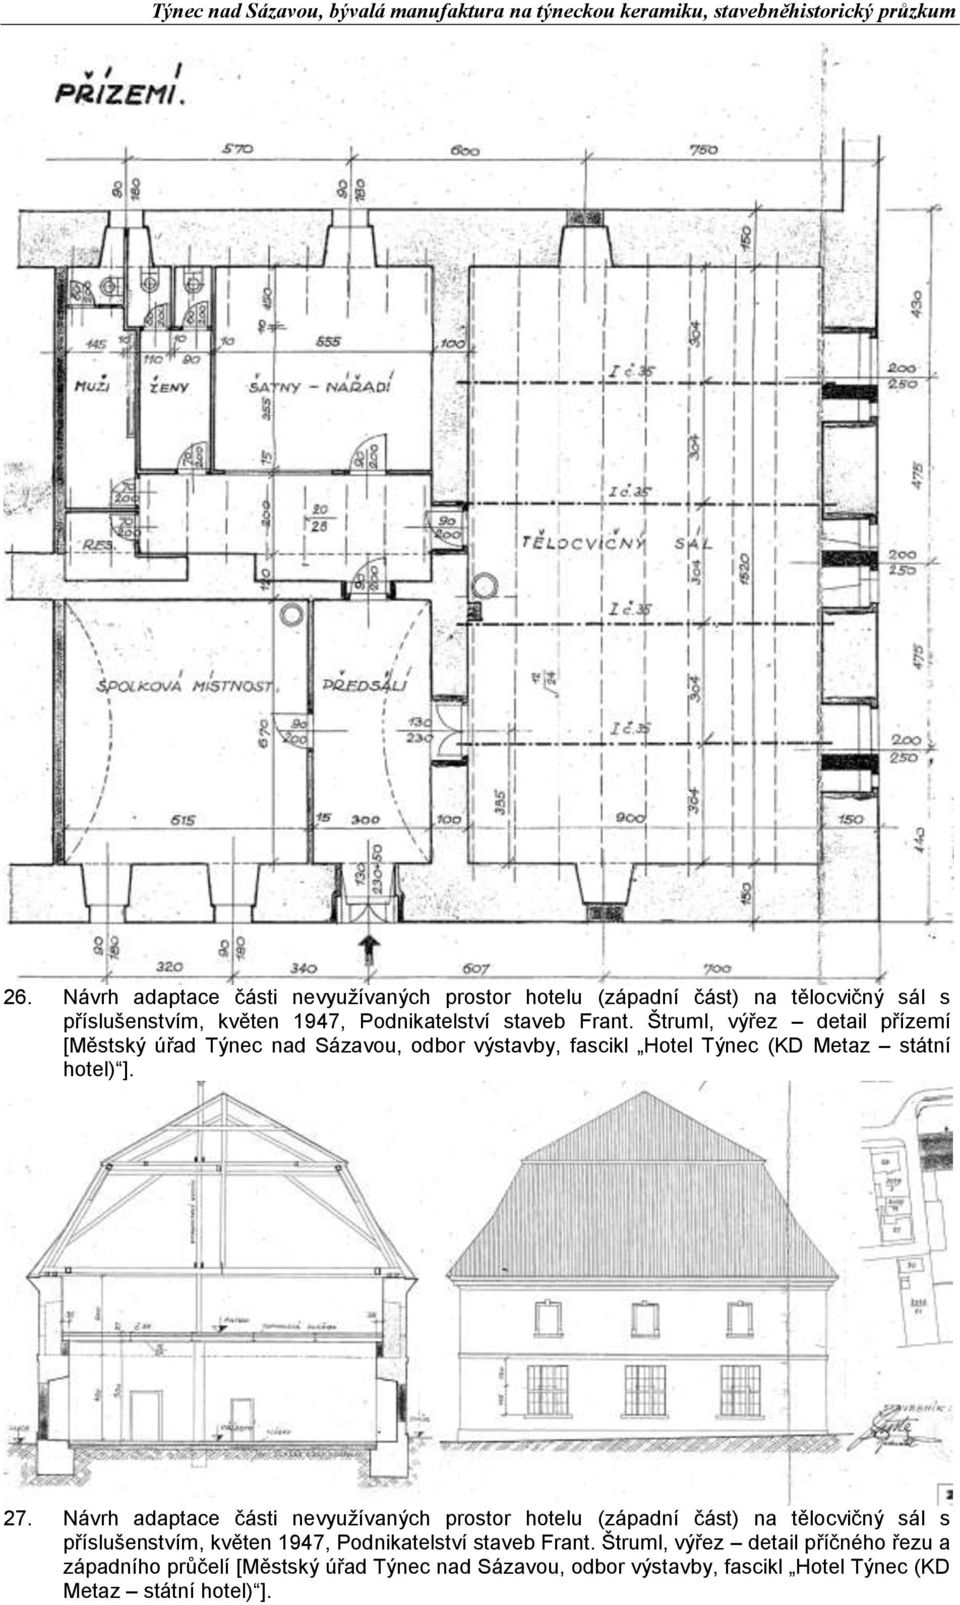 Návrh adaptace části nevyužívaných prostor hotelu (západní část) na tělocvičný sál s příslušenstvím, květen 1947, Podnikatelství staveb Frant.